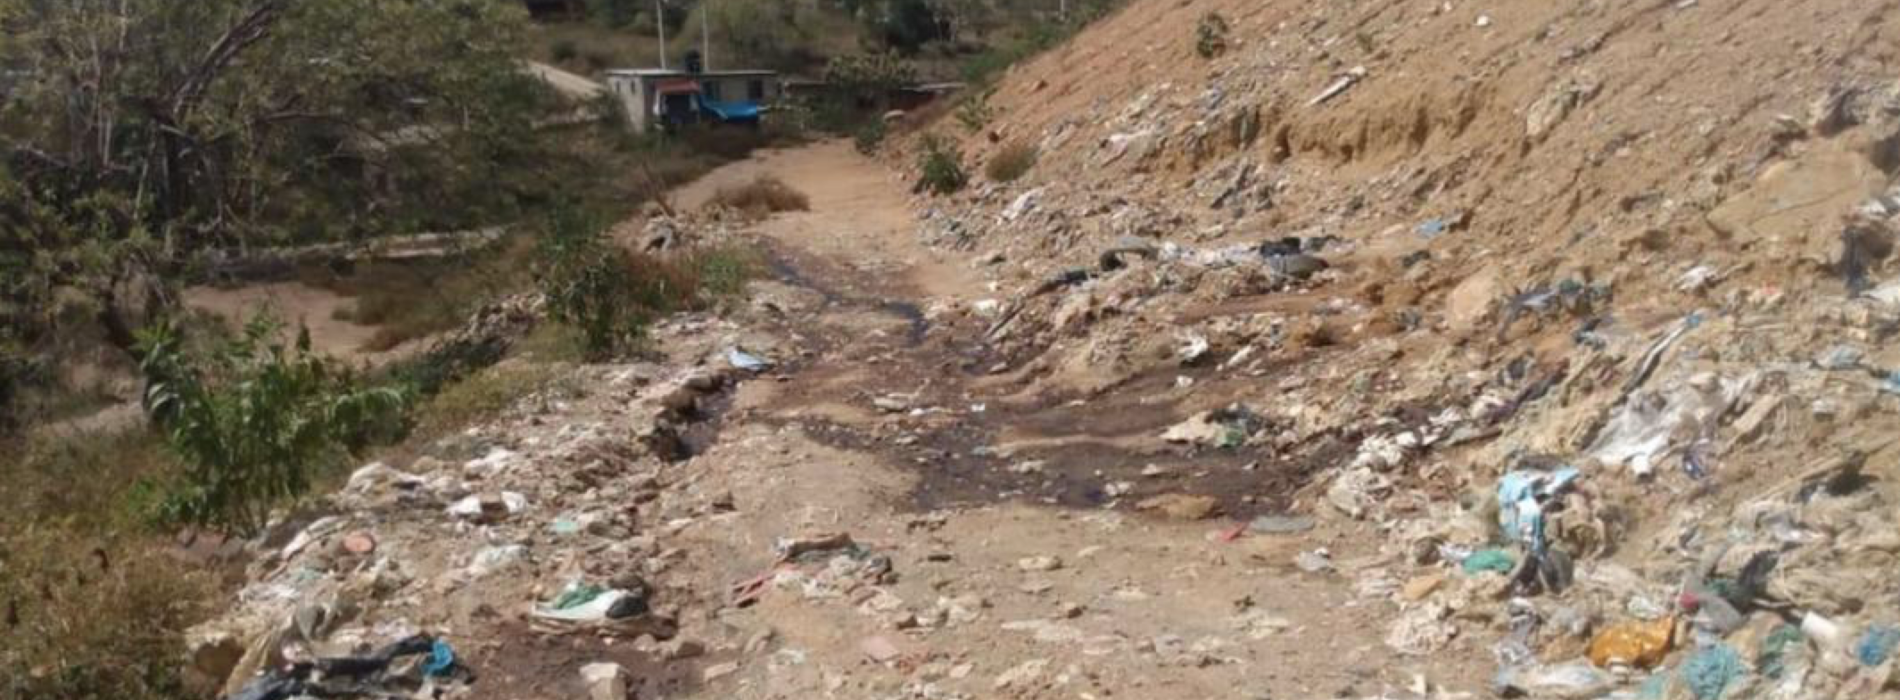 Lixiviados, otra amenaza para los mantos freáticos y el abasto de agua potable en Oaxaca